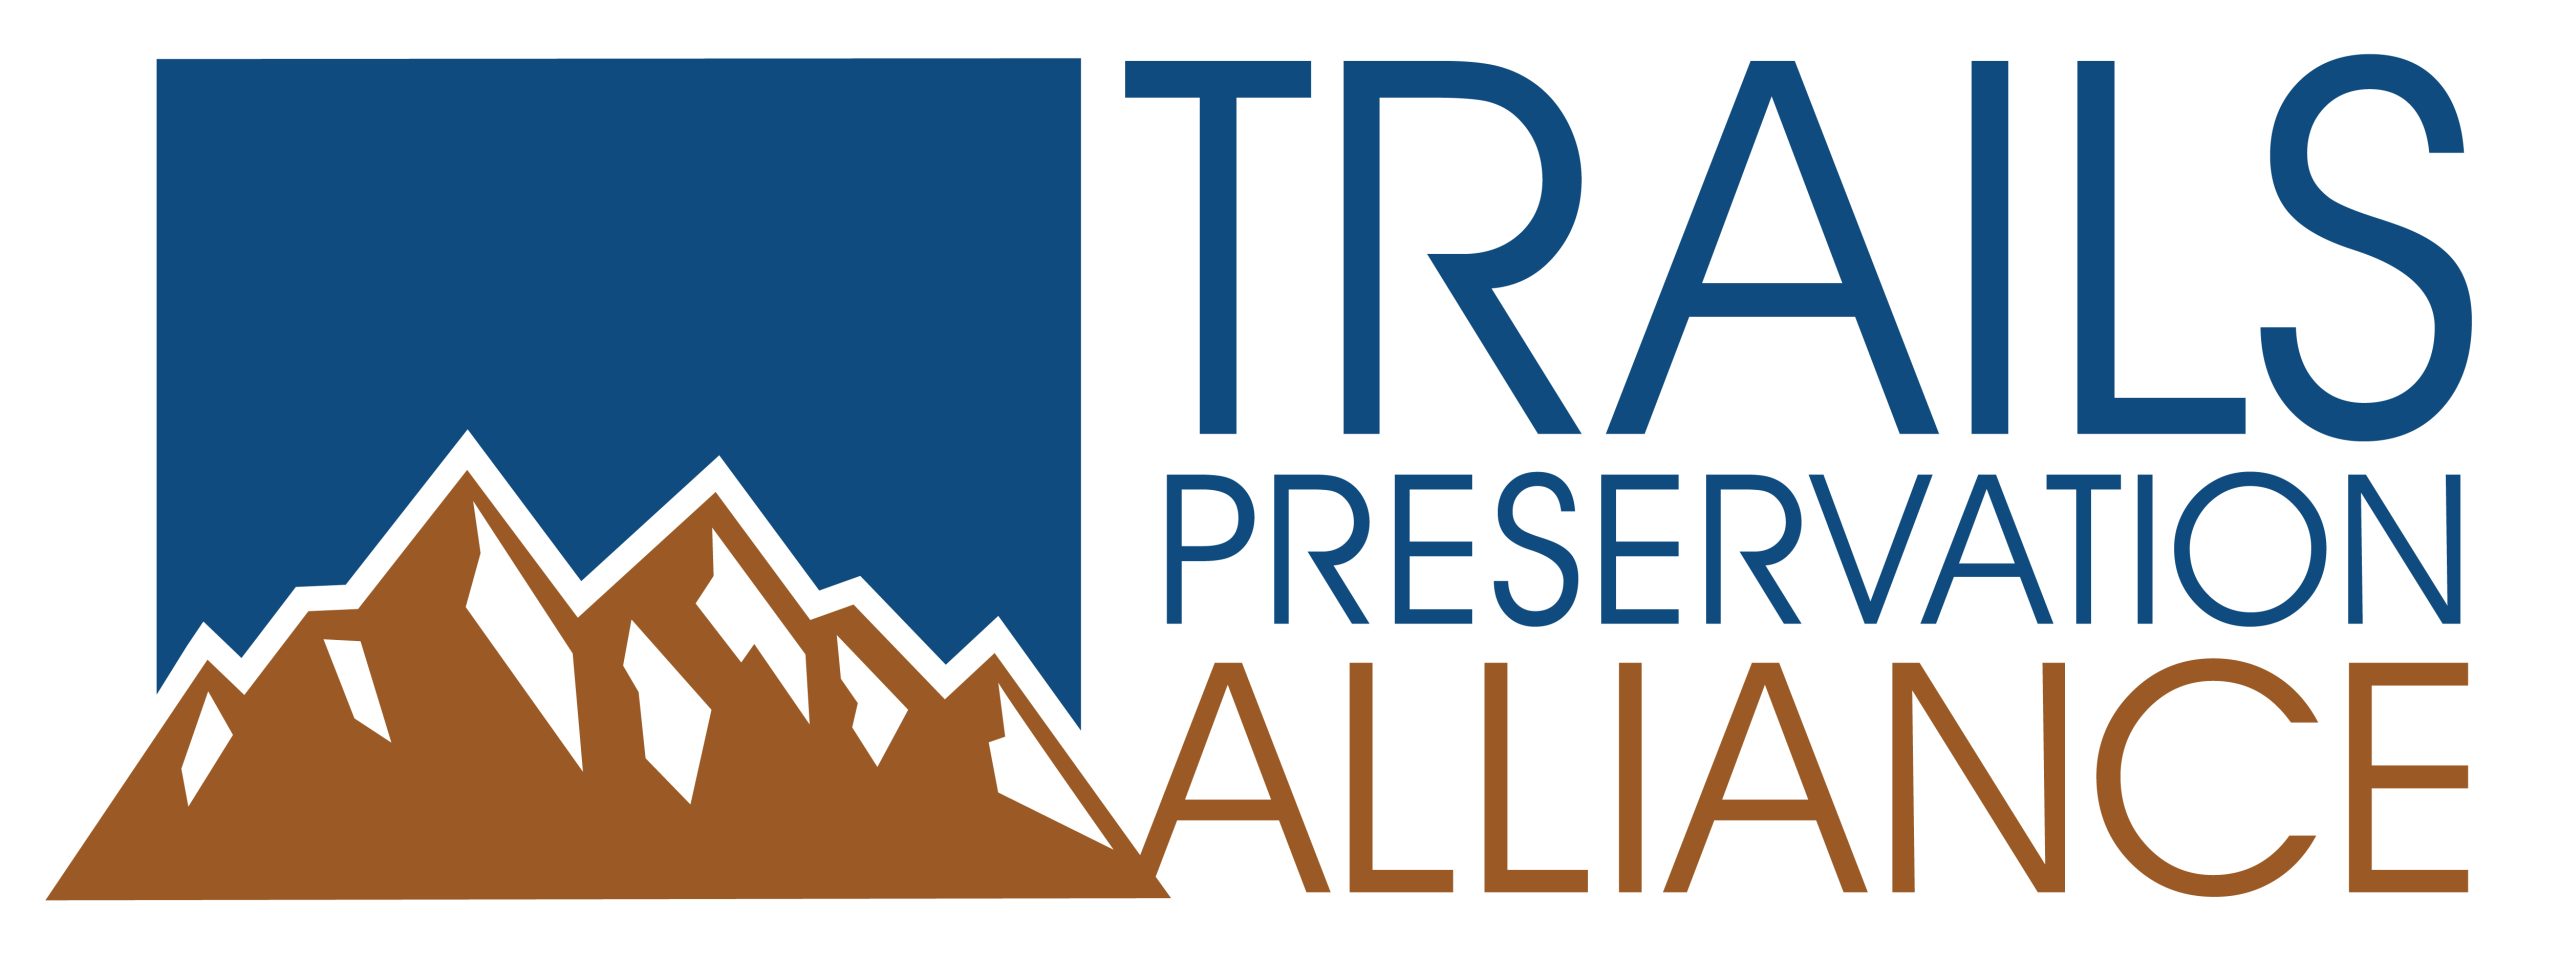 Trails Preservation Alliance logo